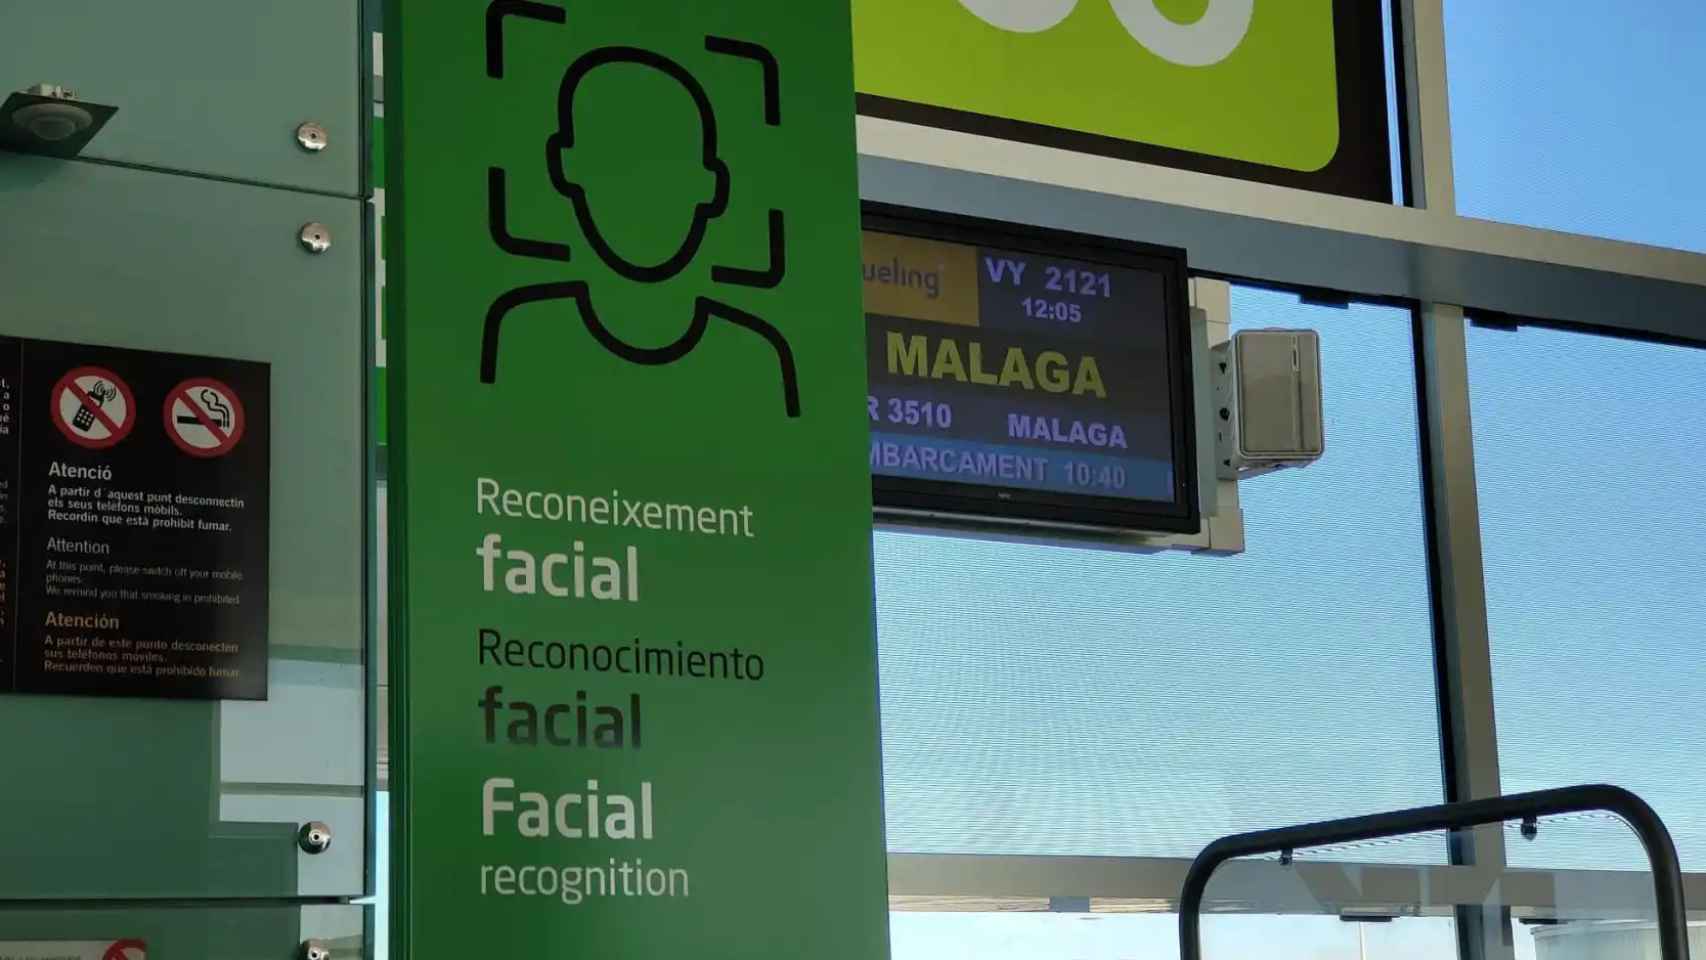 La puerta de embarque al vuelo de Vueling de Barcelona a Málaga para acceder mediante reconocimiento facial / CM